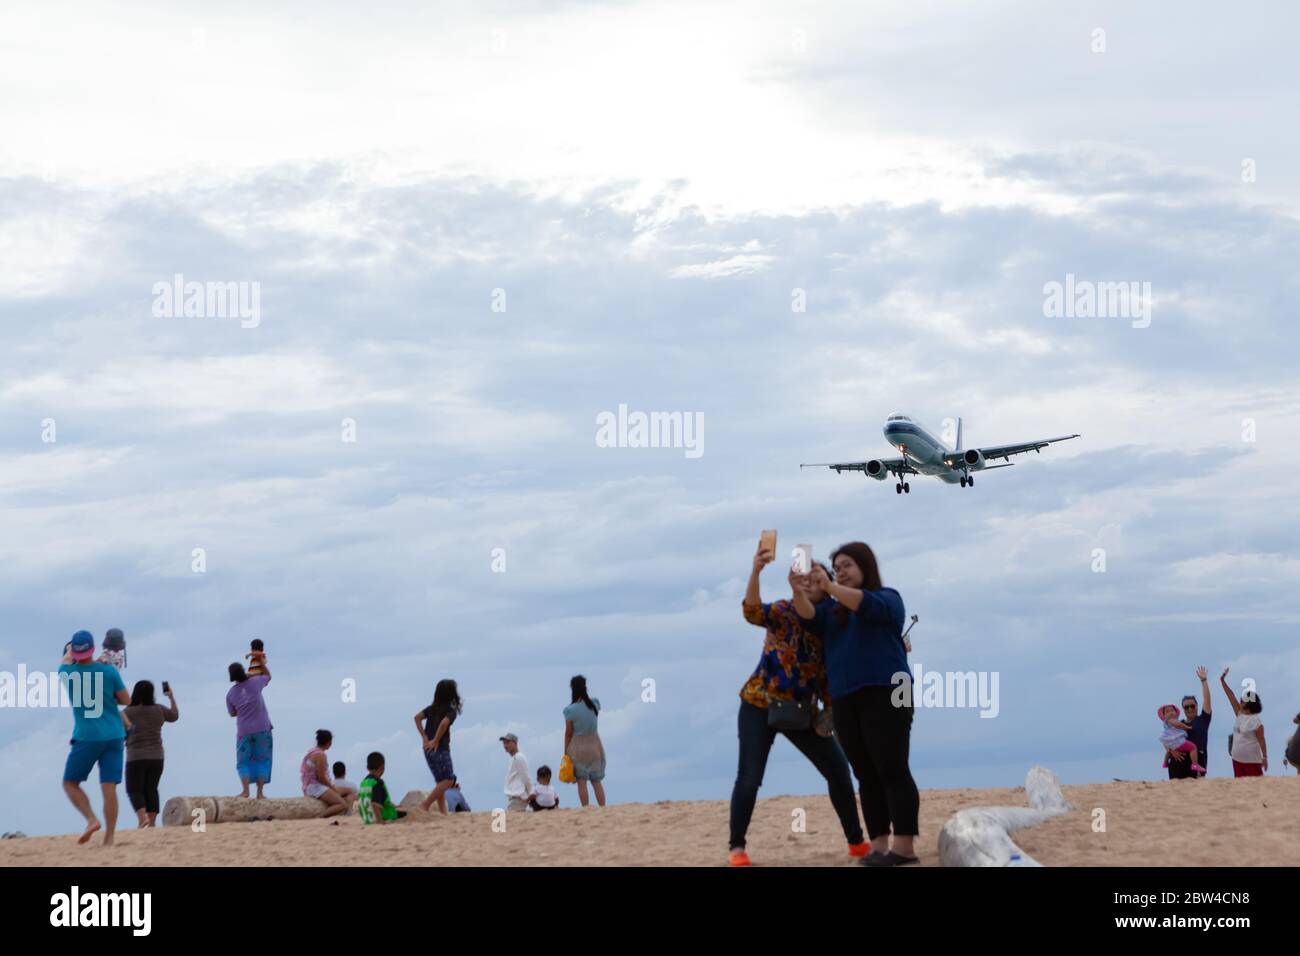 Phuket - Thaïlande; 10 novembre 2018: China Southern Airlines atterrissage à l'aéroport international de Phuket près de la plage Mai Khao et plus de gens aiment à tak Banque D'Images